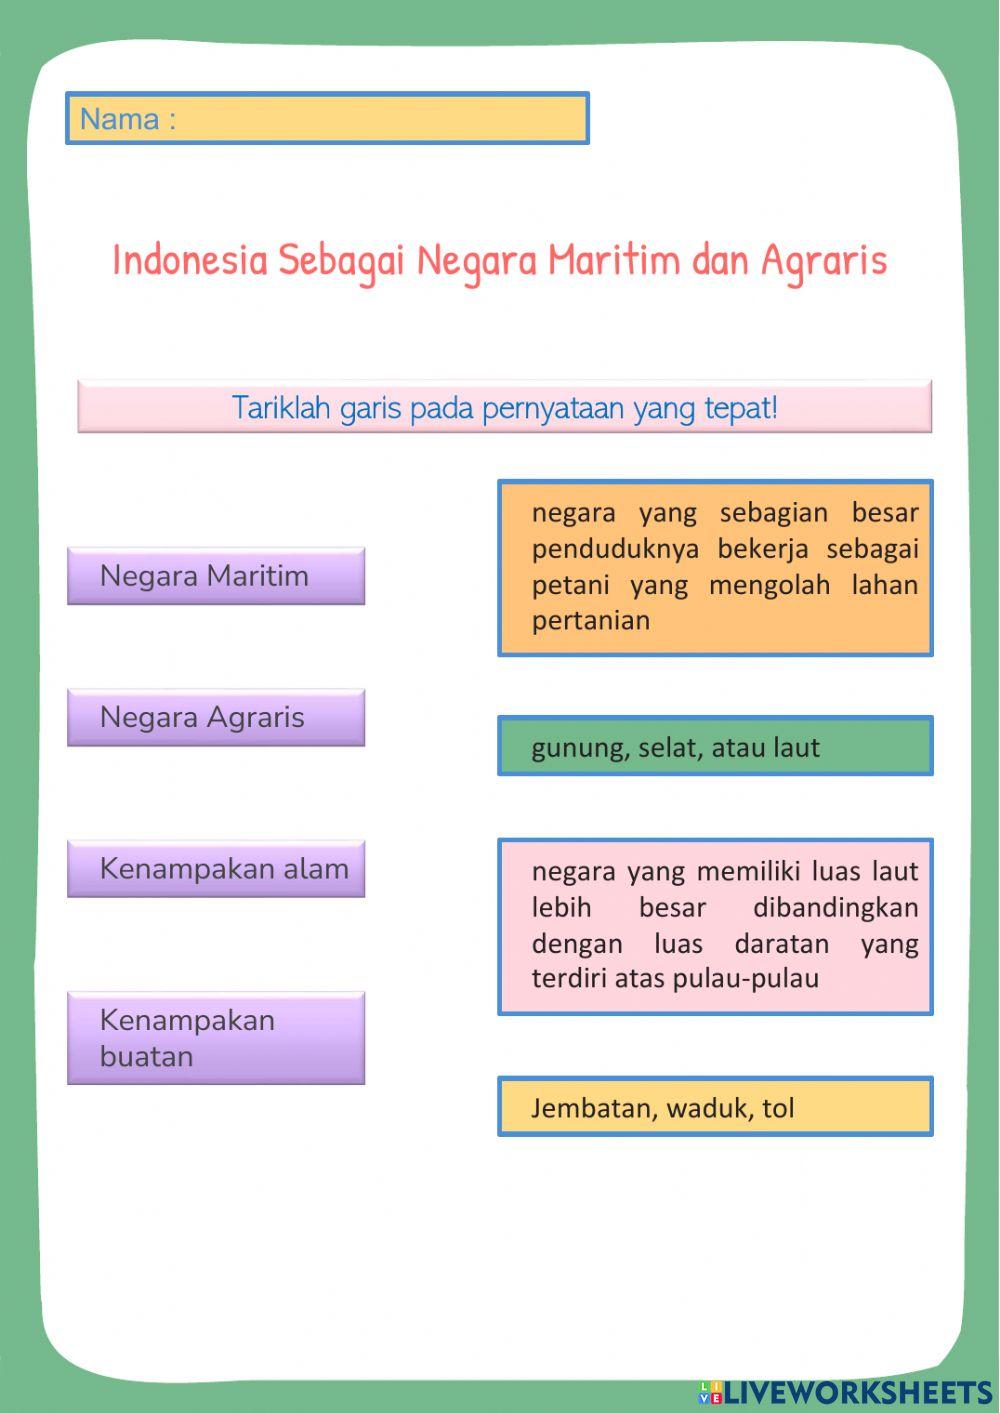 Indonesia sebagai Negara Maritim dan Agraris